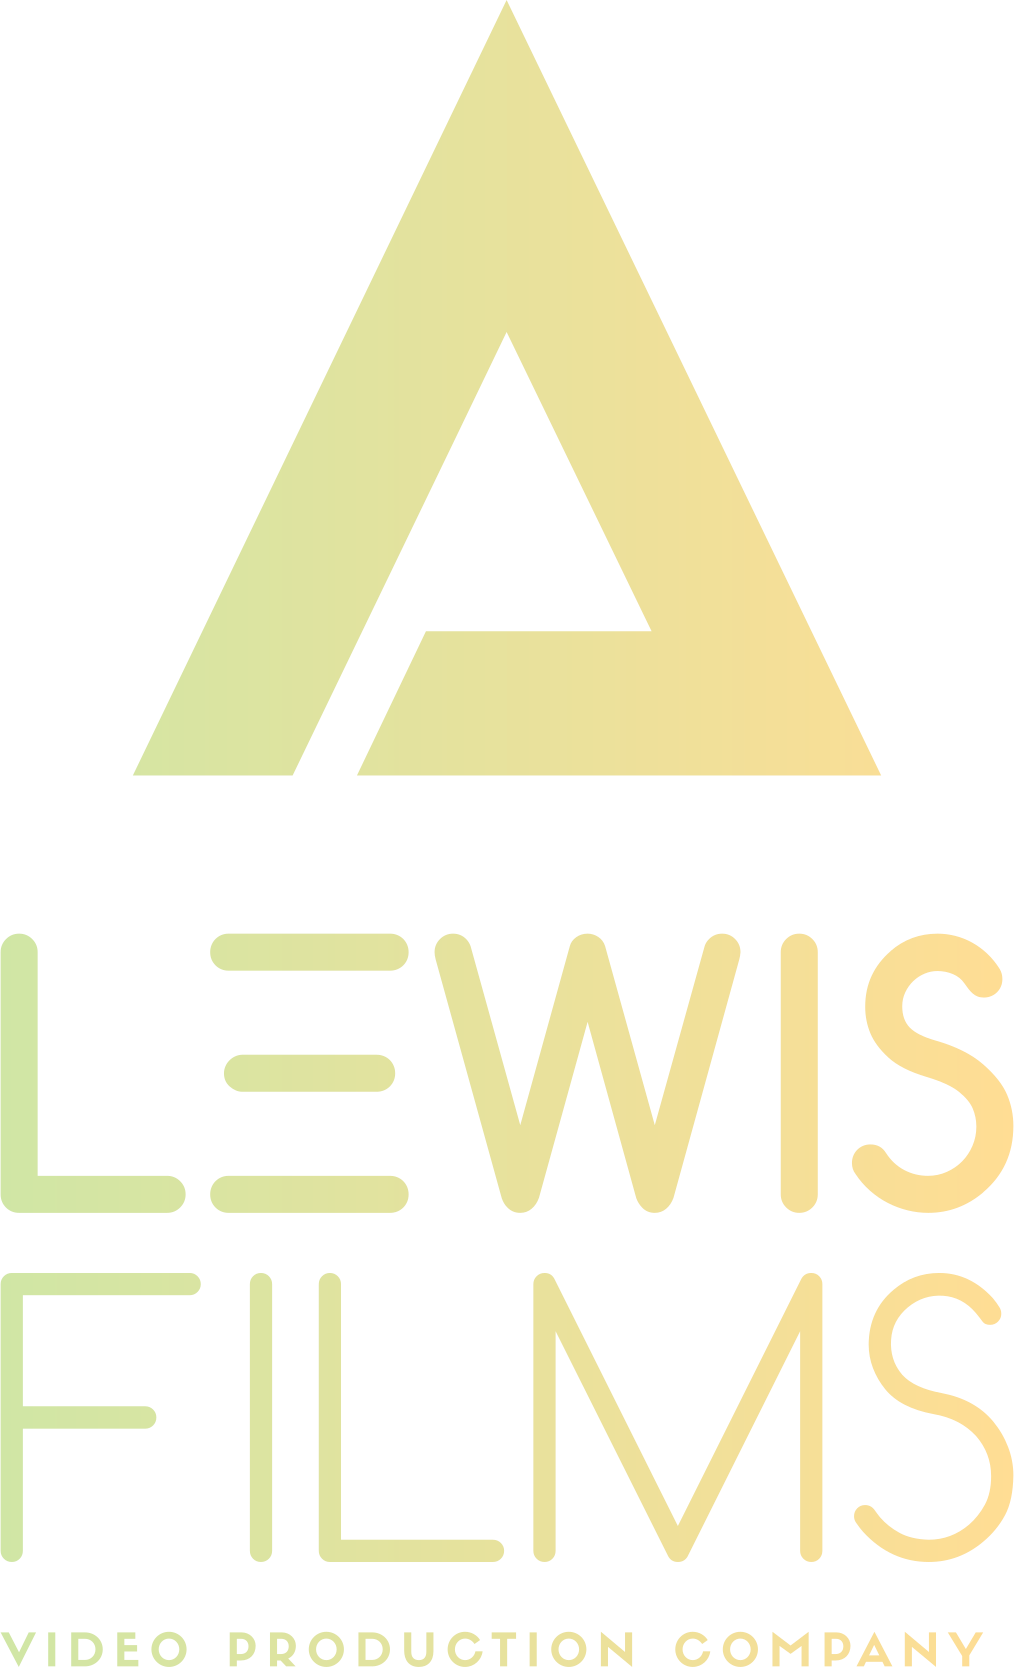 A. Lewis Films